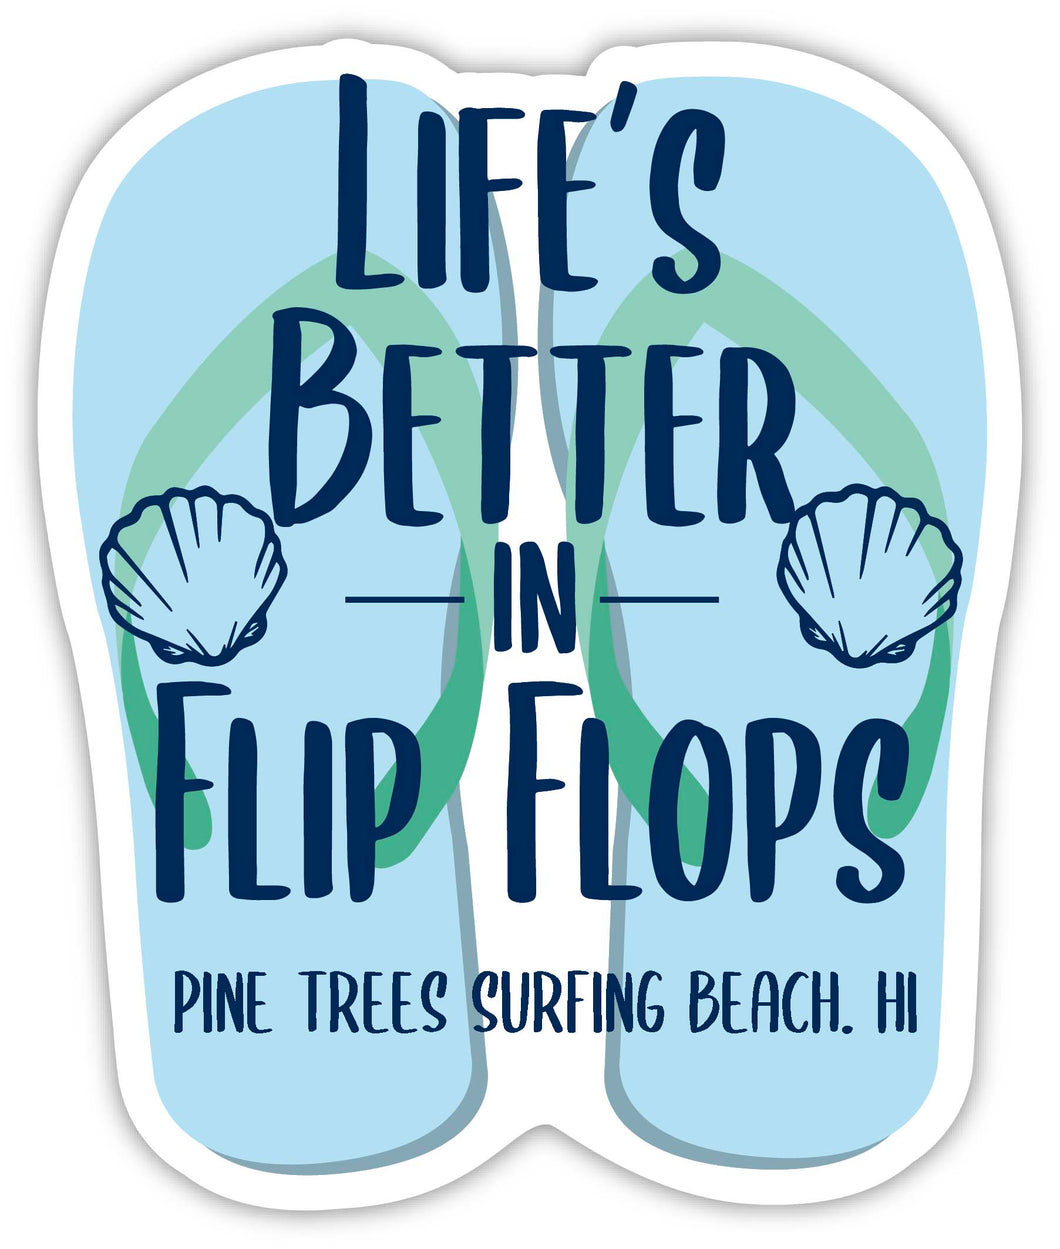 Pine Trees Surfing Beach Hawaii Souvenir 4 Inch Vinyl Decal Sticker Flip Flop Design